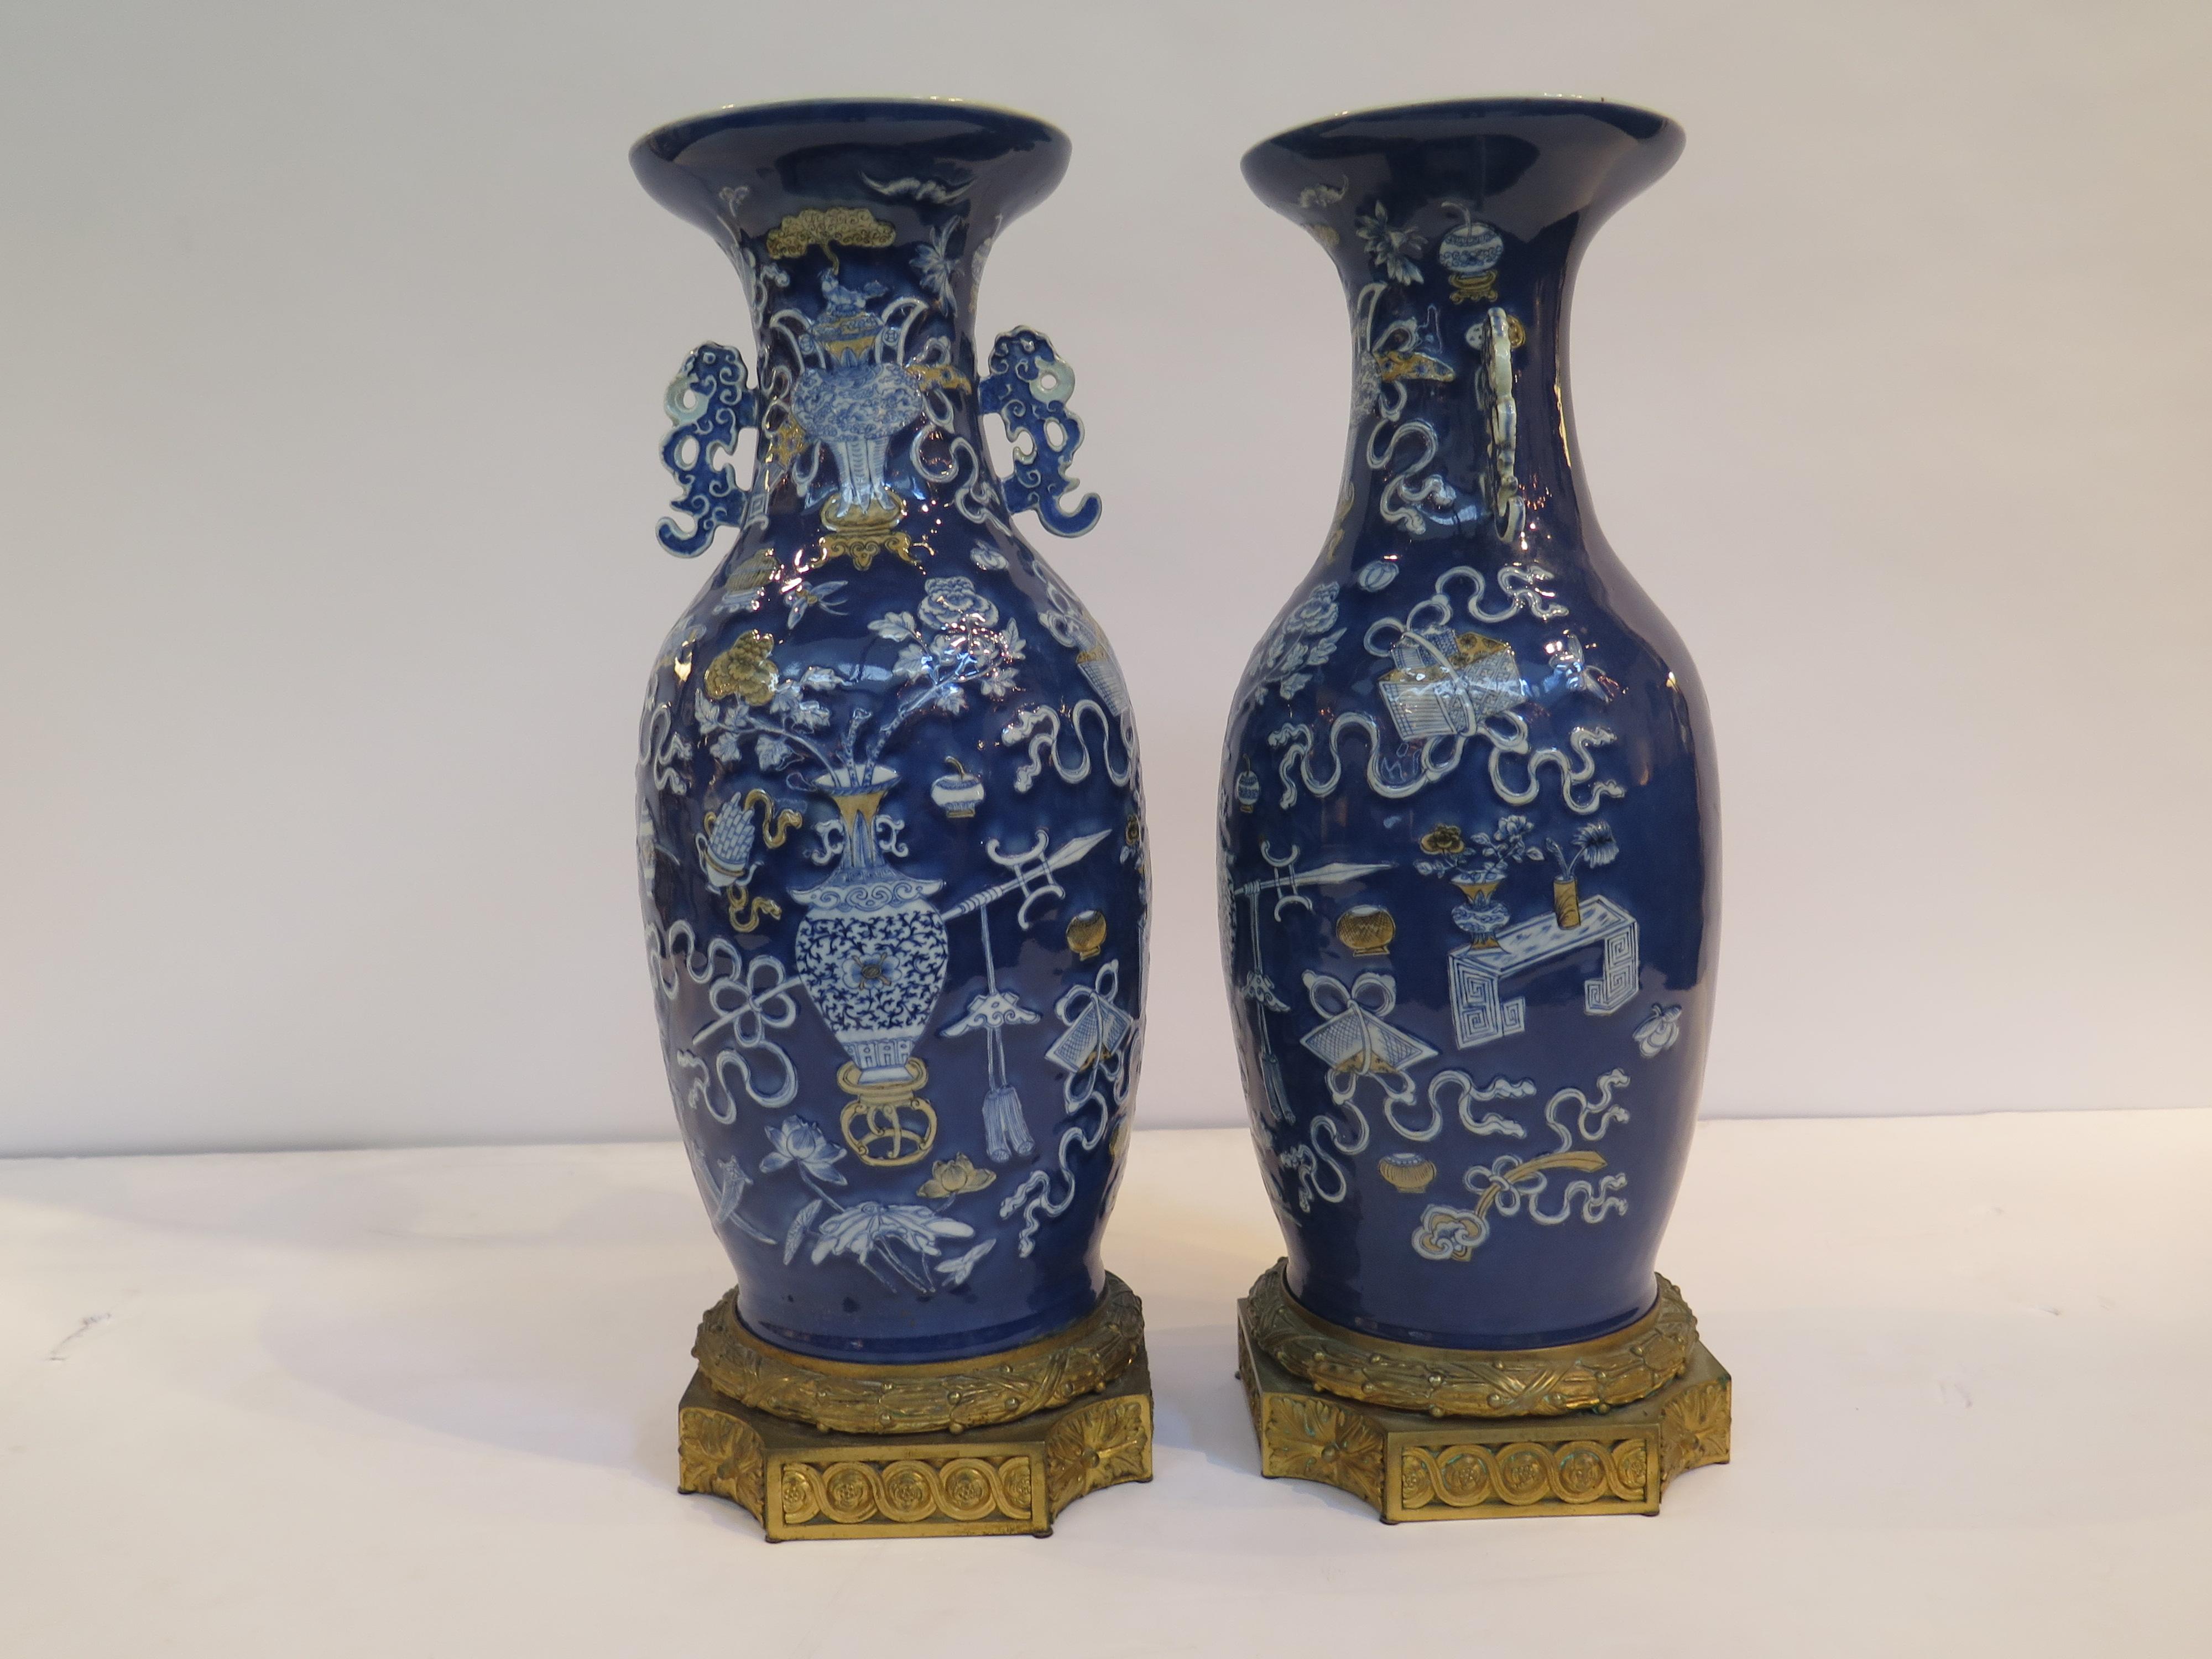 Ein wunderschönes Paar chinesischer Porzellanvasen auf kunstvollen Sockeln aus vergoldeter französischer Bronze. Die Vasen mit blauem Hintergrund haben erhabene weiße Blumensträuße in der Mitte und verschiedene Schätze um sie herum. Beide mit